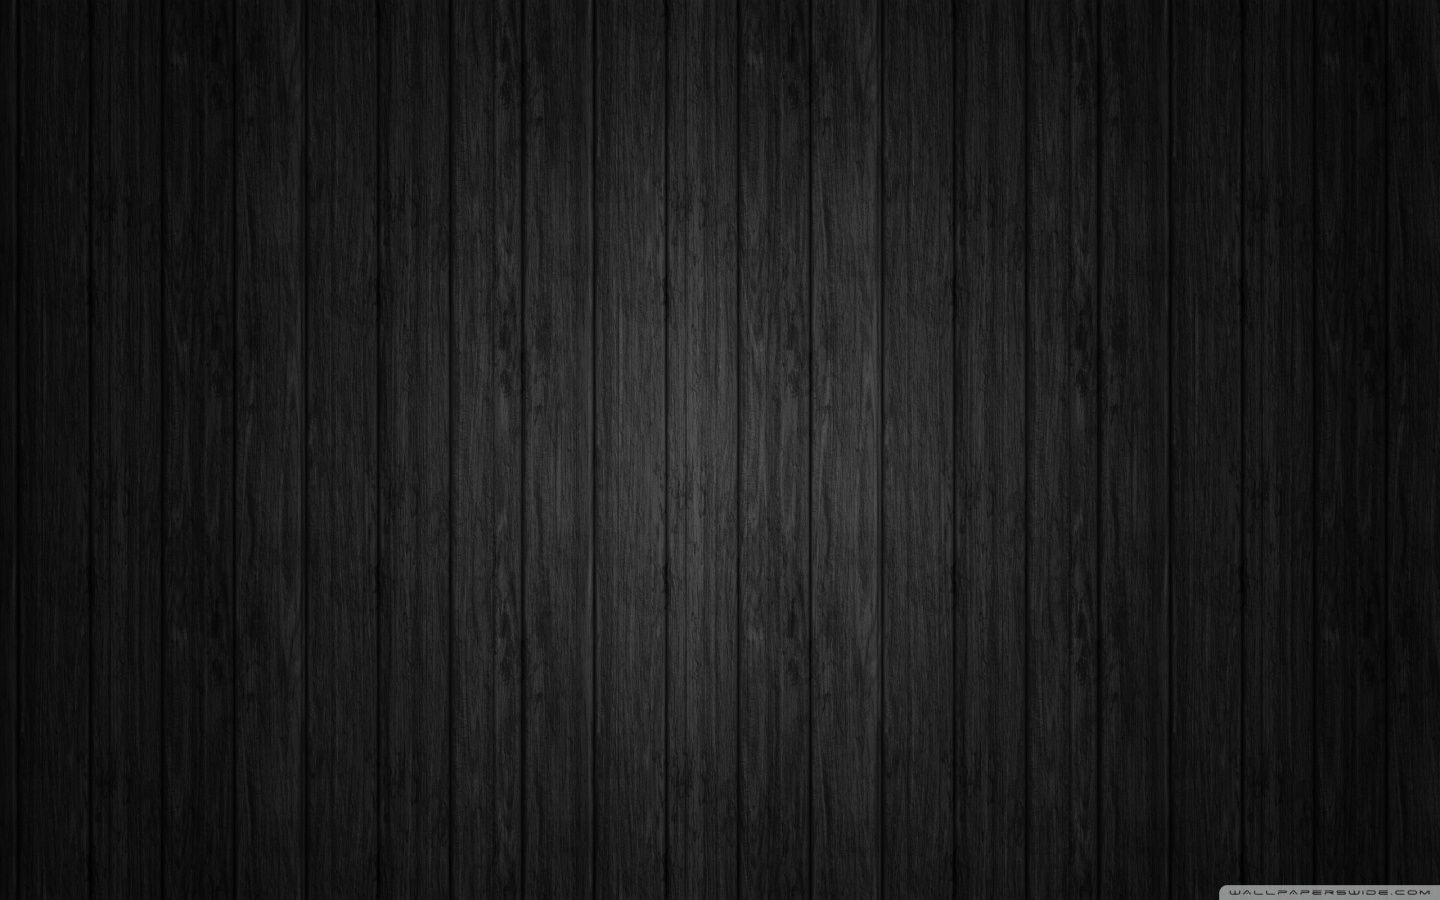 Black Background Wood HD desktop wallpaper : Widescreen : High ...